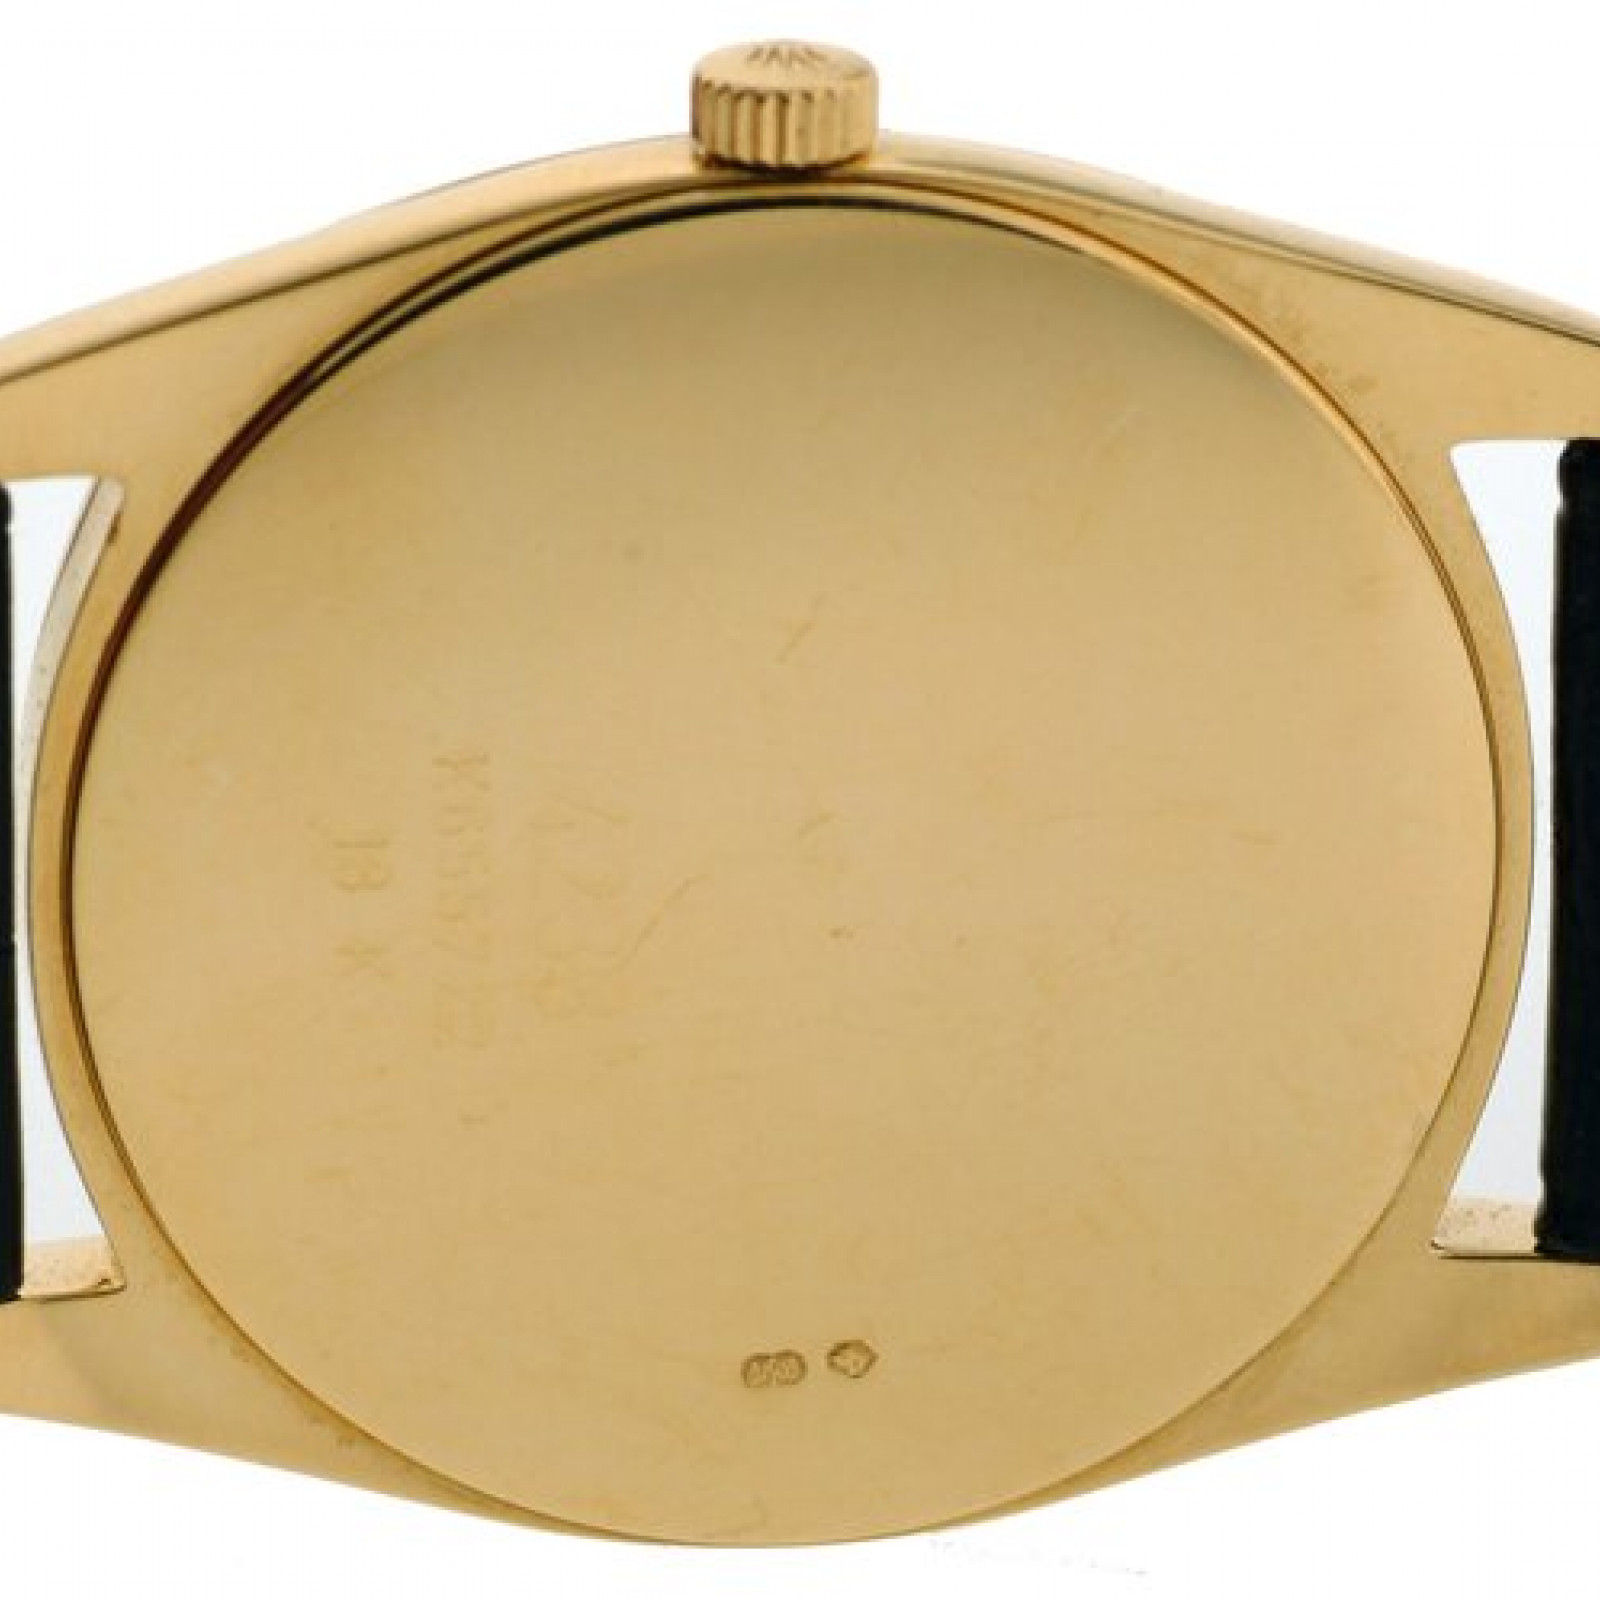 Rolex Cellini Danaos 4233 Gold 34 mm